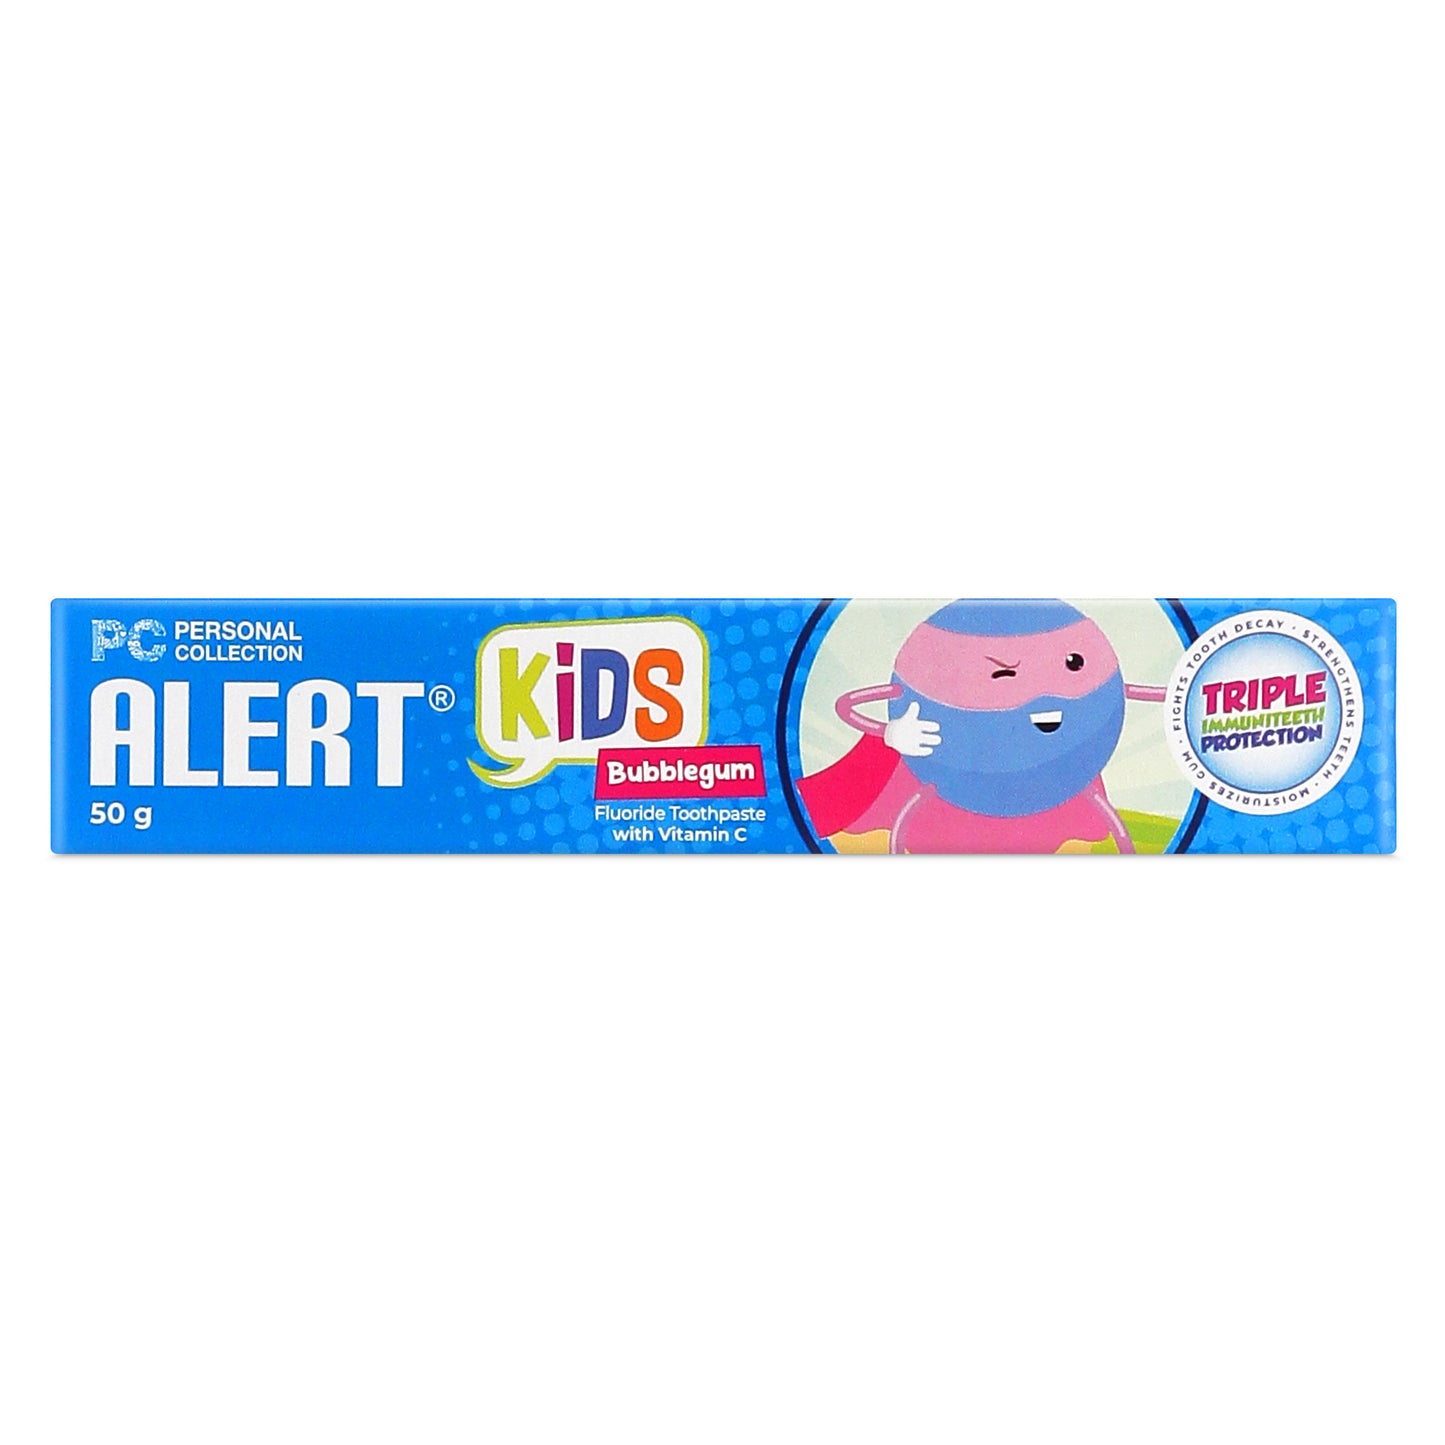 Alert Kids Bubblegum with Vitamin C Fluoride Toothpaste 50 g